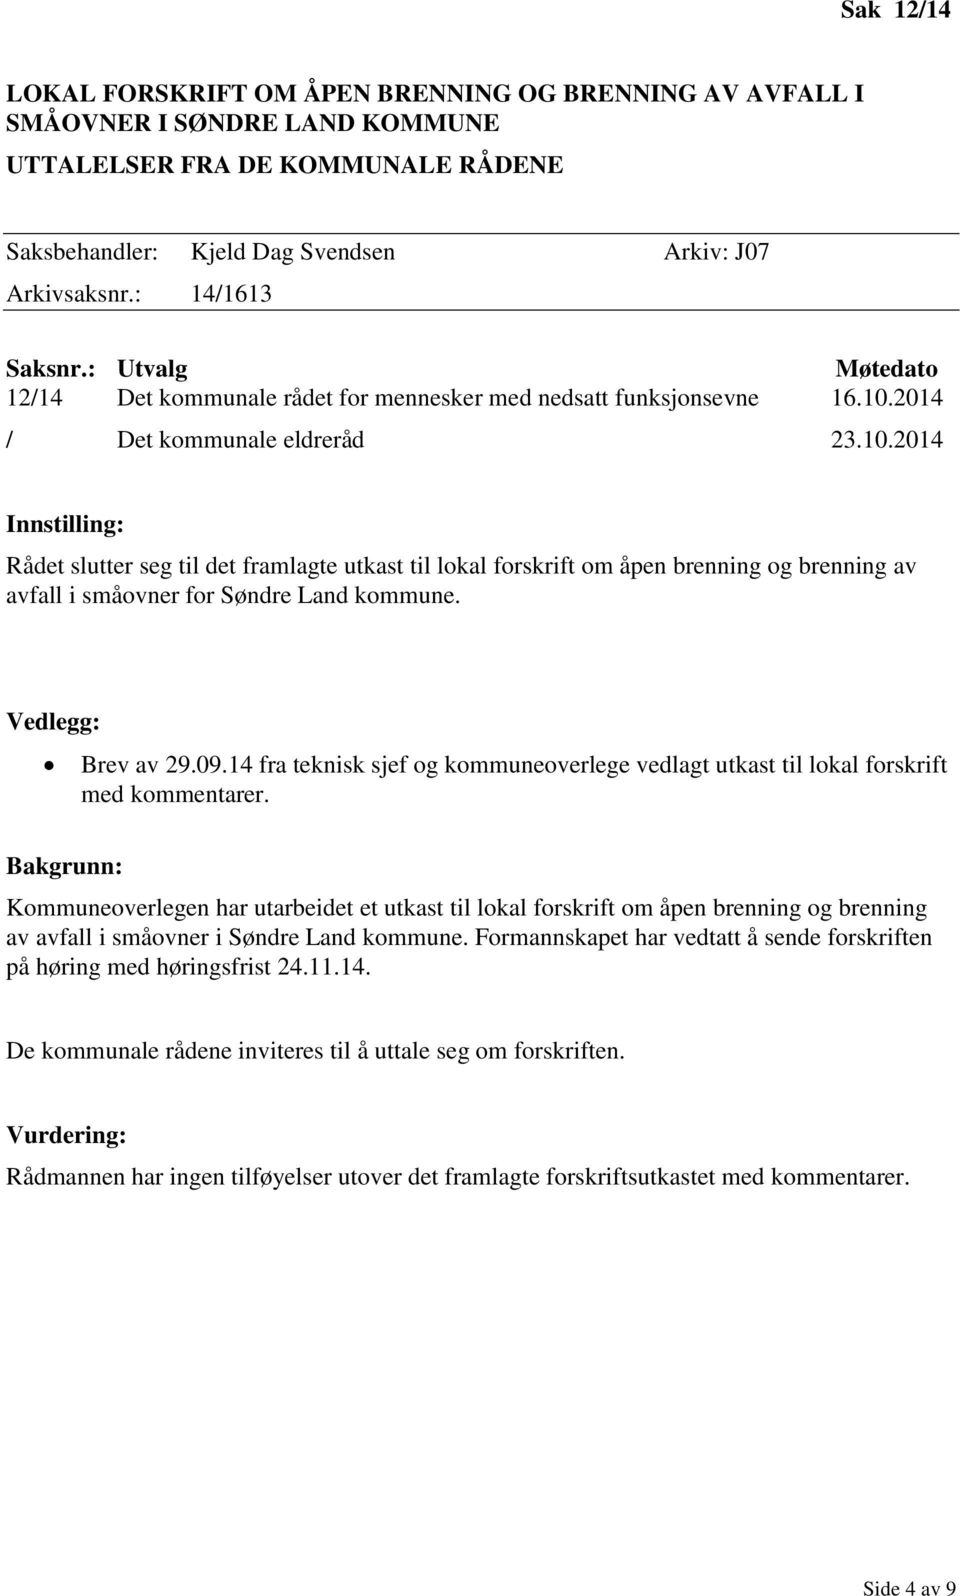 2014 / Det kommunale eldreråd 23.10.2014 Rådet slutter seg til det framlagte utkast til lokal forskrift om åpen brenning og brenning av avfall i småovner for Søndre Land kommune. Brev av 29.09.